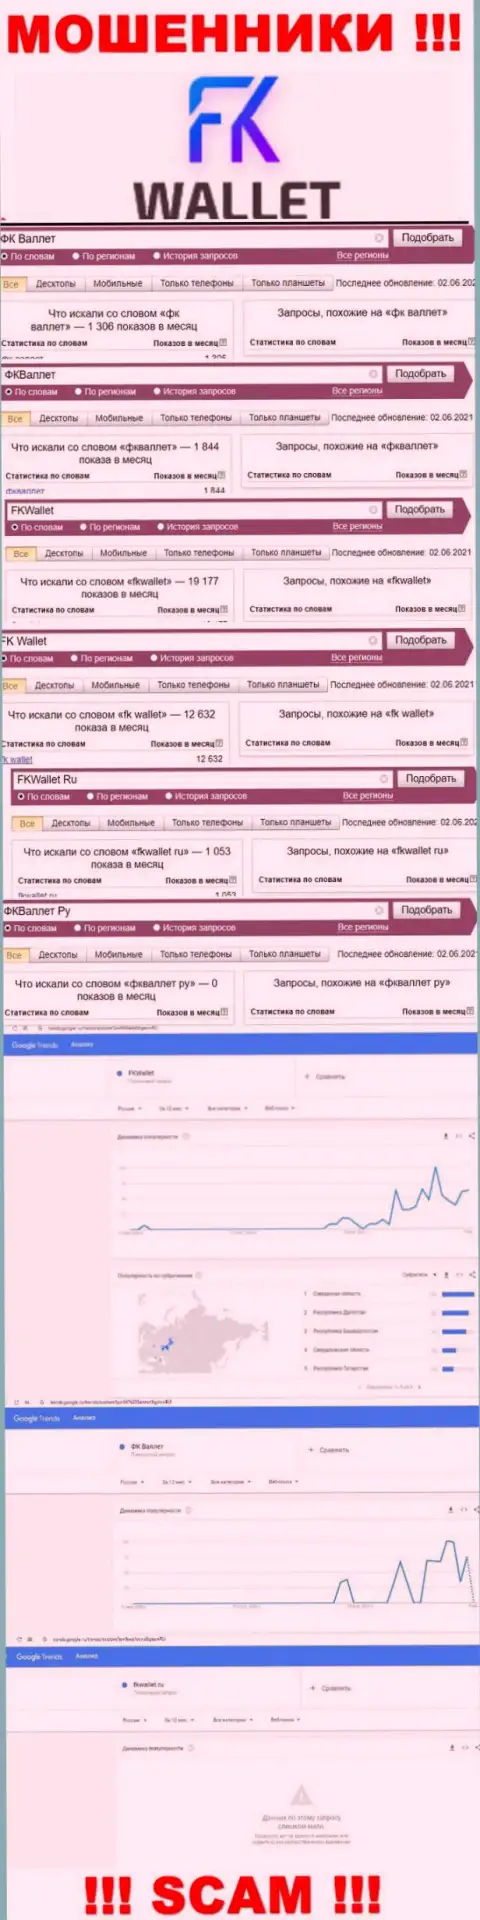 Скриншот результатов online-запросов по жульнической конторе FK Wallet